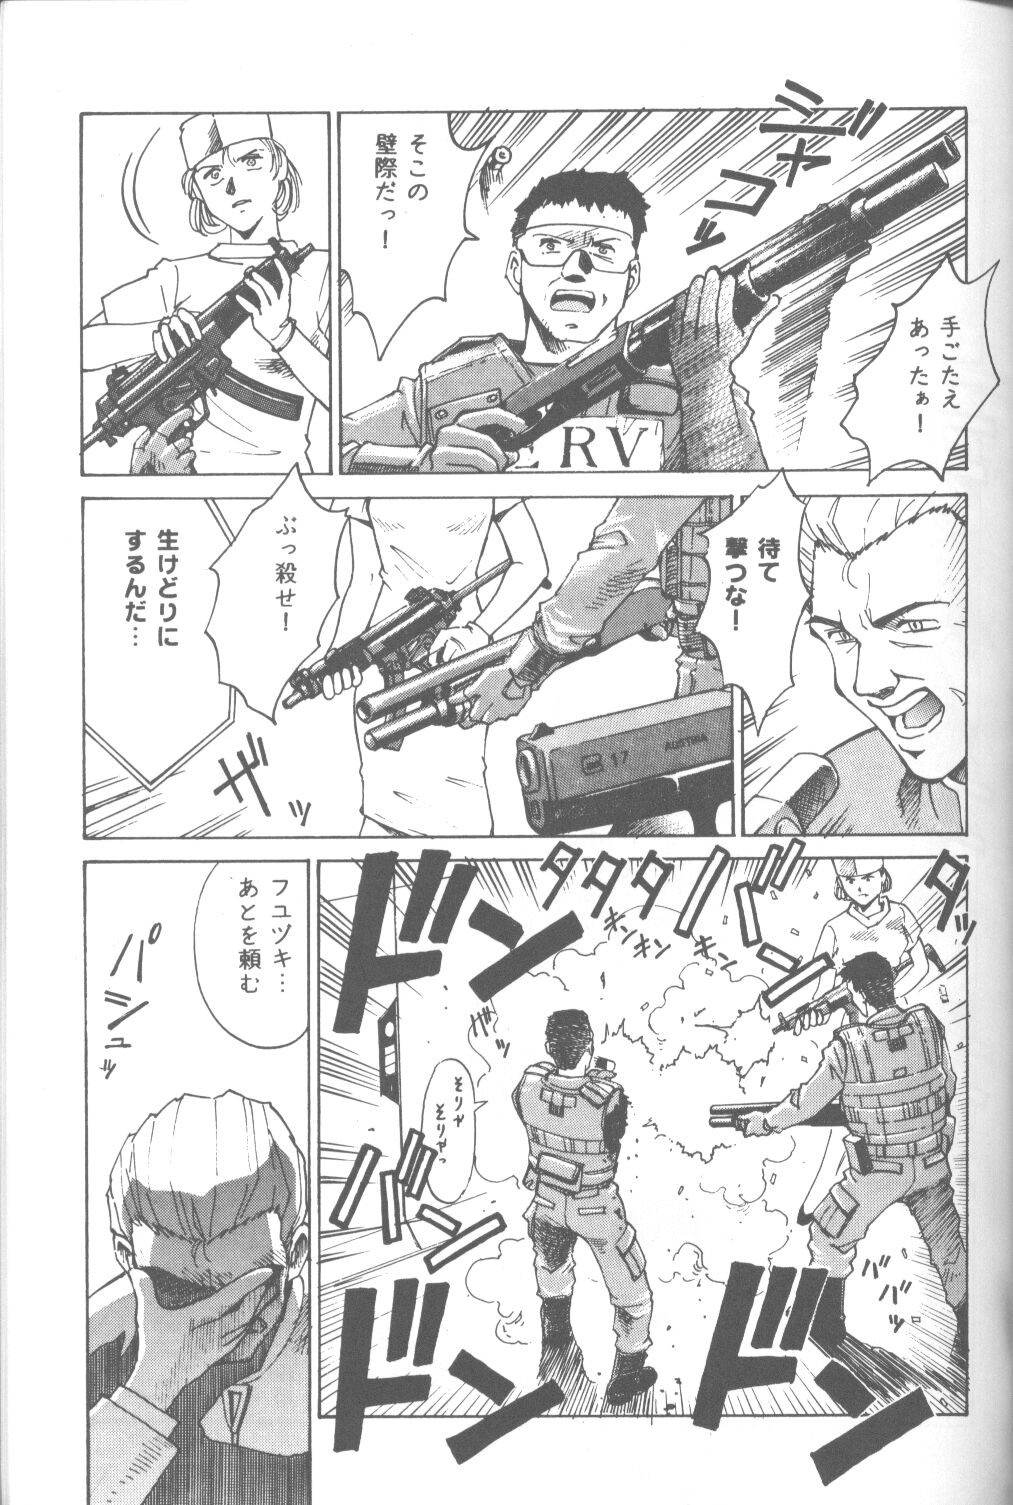 [Takahiro Kutugi] Friends Yes We're (Evangelion) page 48 full